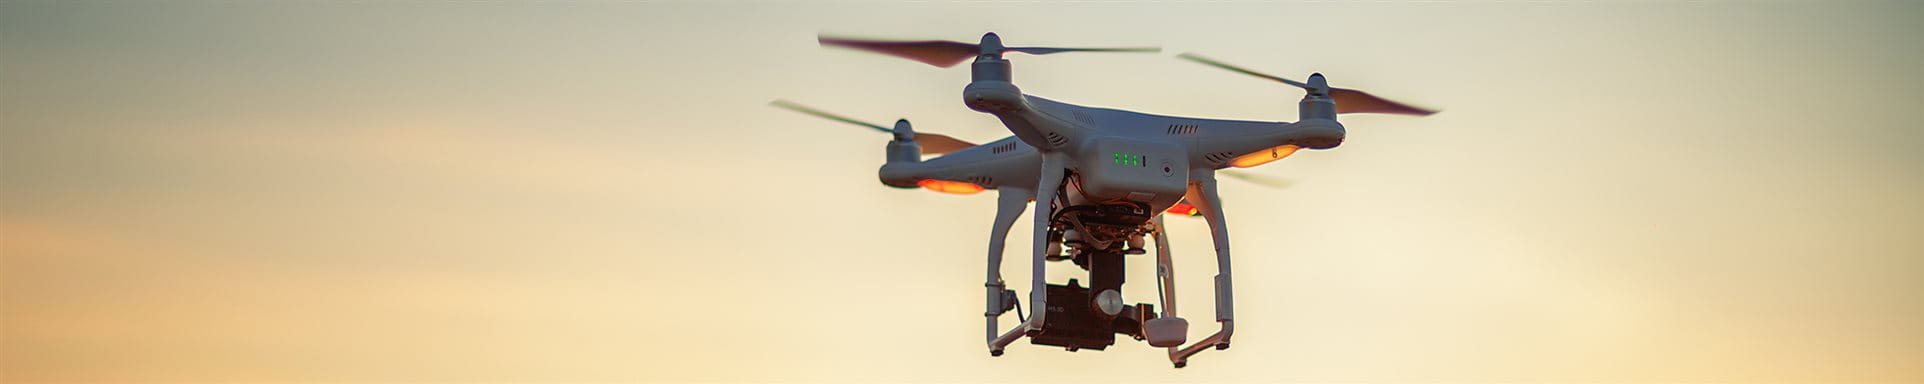 Drohne fliegt in der Luft